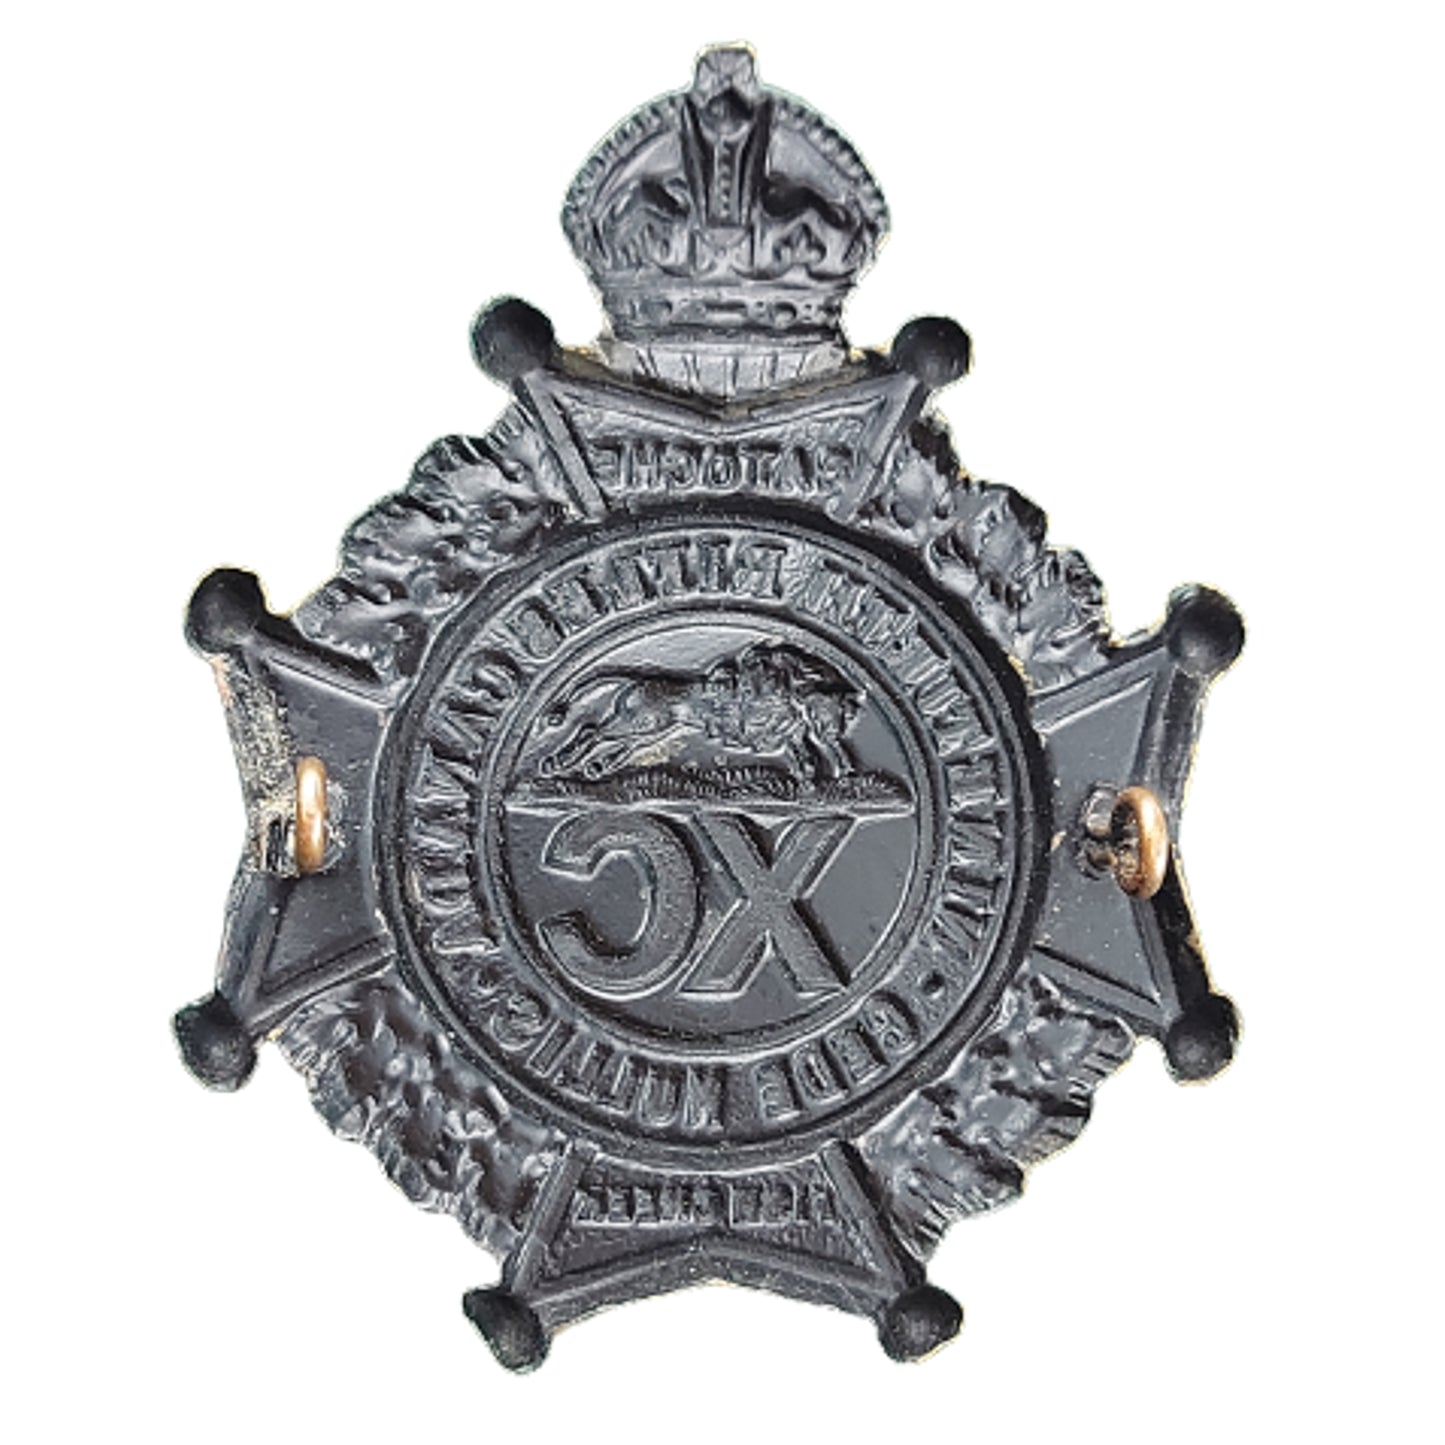 Pre-WW1 90th Regiment Winnipeg Rifles Cap Badge